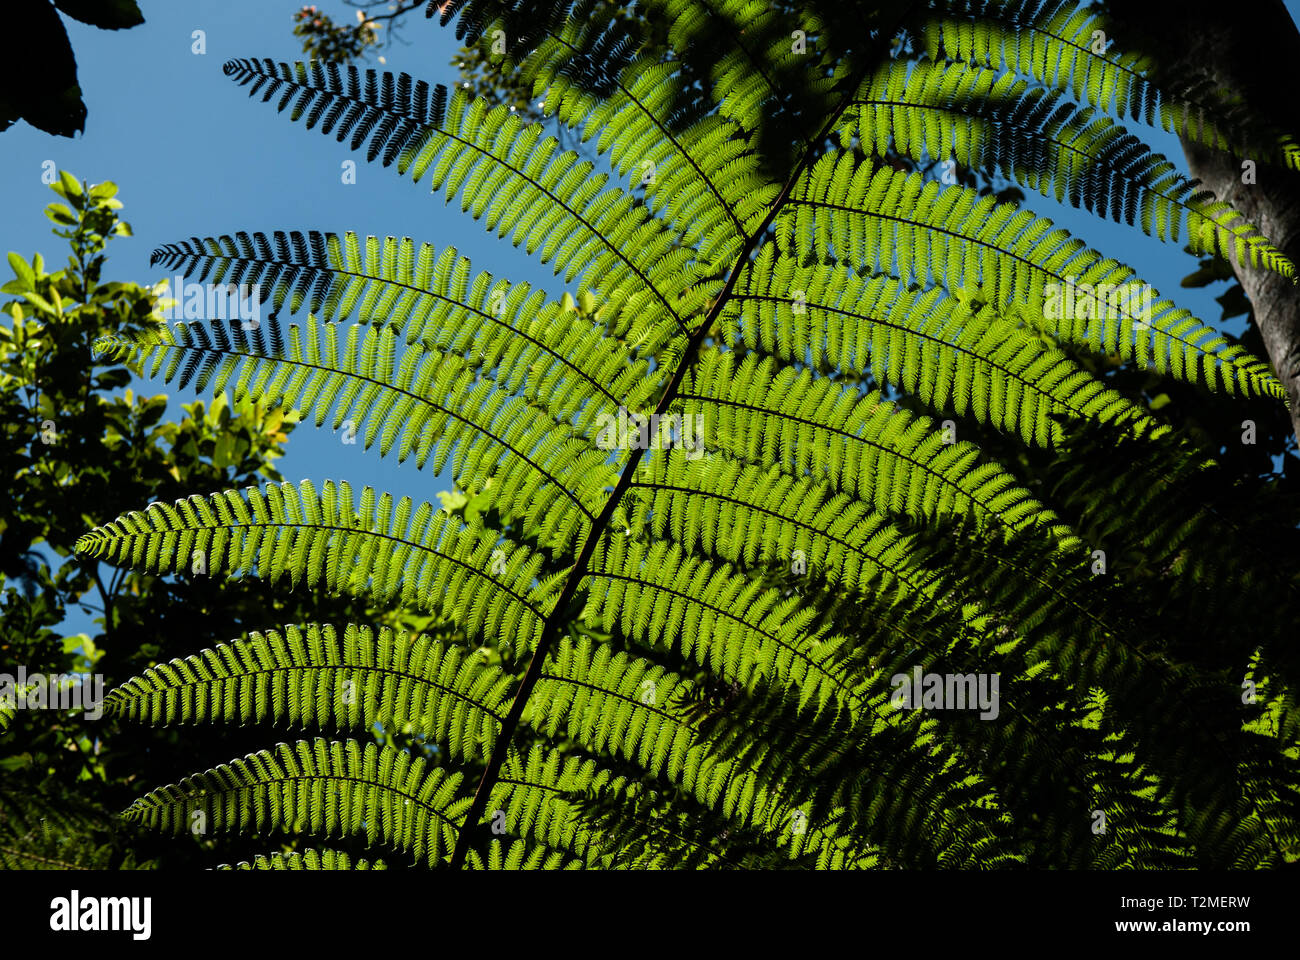 Una felce in una piccola radura in una forect tropicale è illuminato dal sole, le ombre sono i promemoria della Nuova Zelanda silver fern bandiere Foto Stock